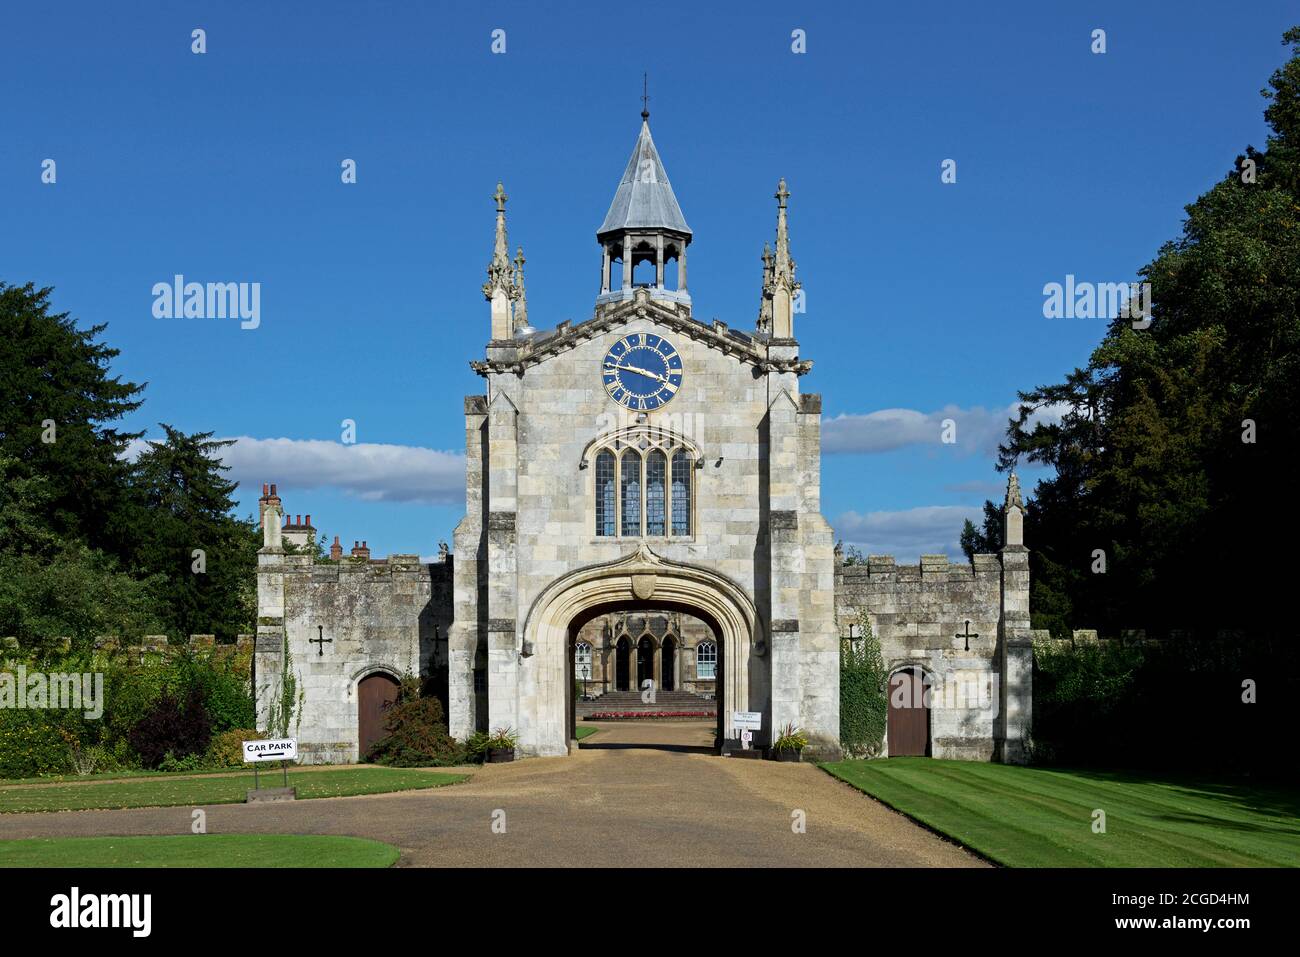 Das Torhaus von Bishopthorpe Palace, die Residenz des Erzbischofs von York, Bishopthorpe, North Yorkshire, England Großbritannien Stockfoto